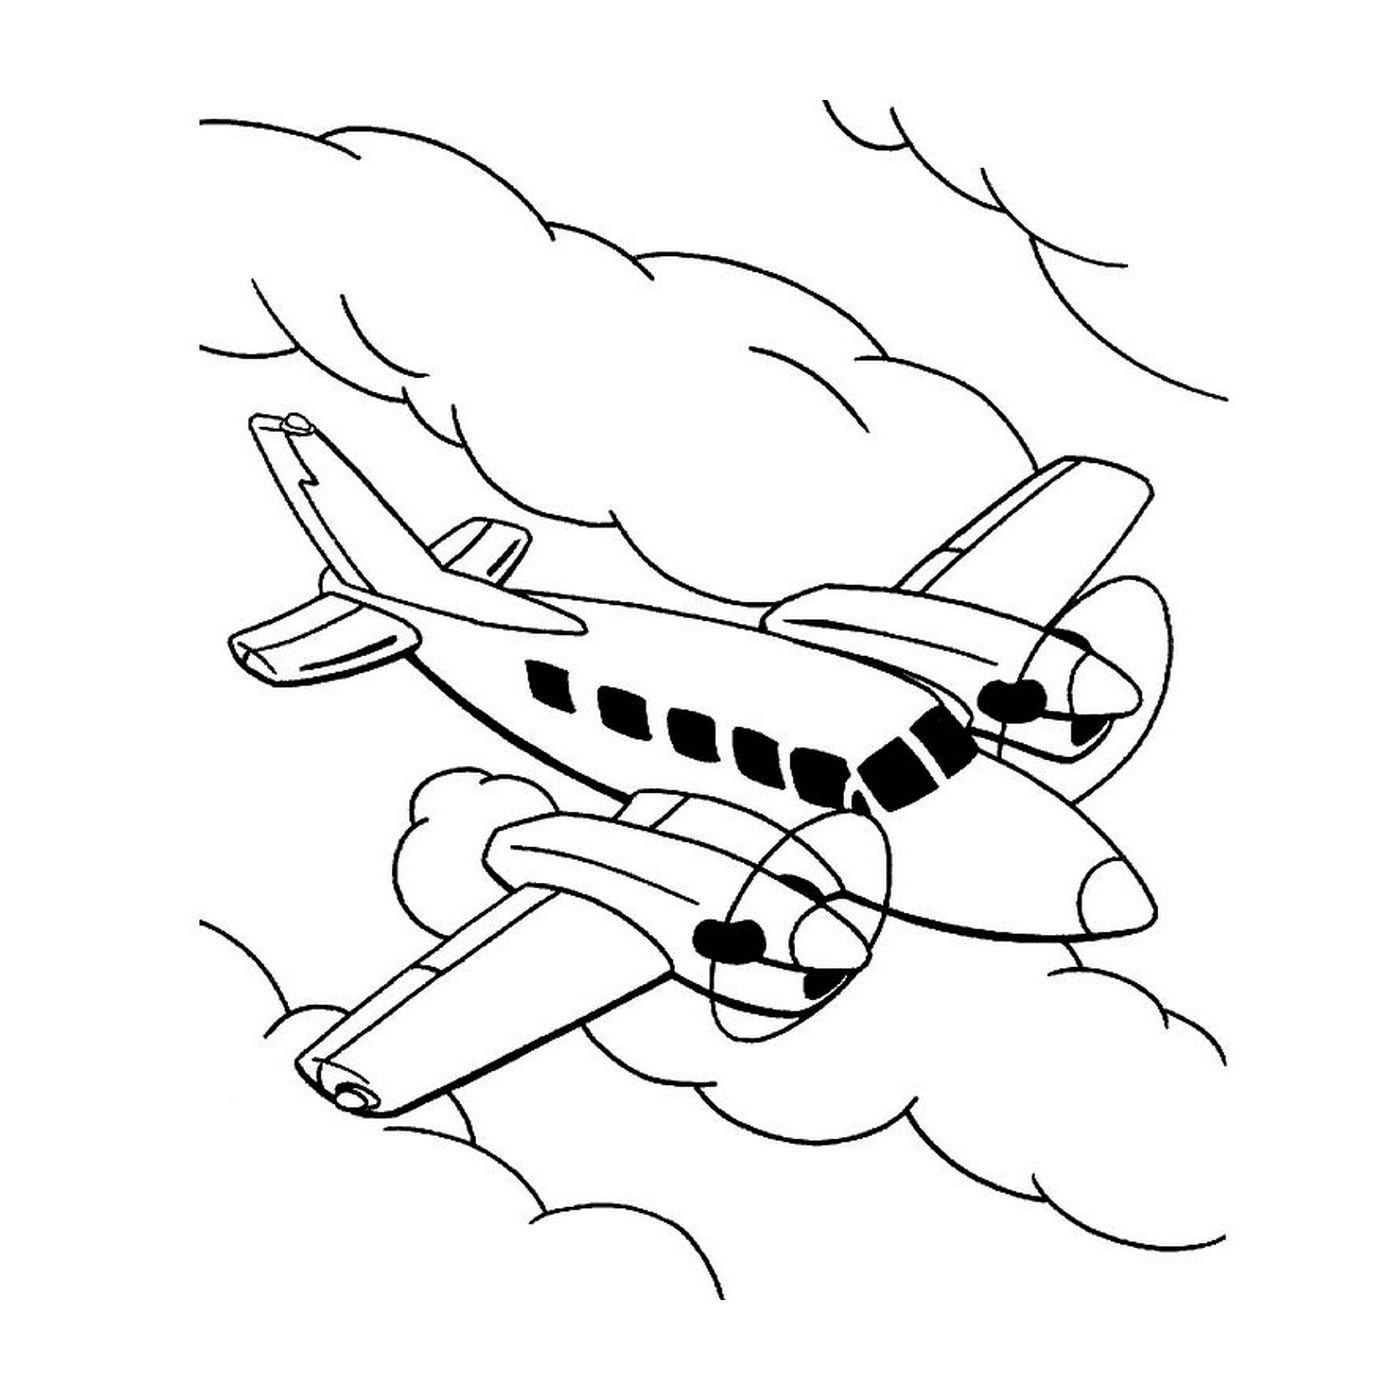  Ein Flugzeug fliegt am Himmel zwischen den Wolken 